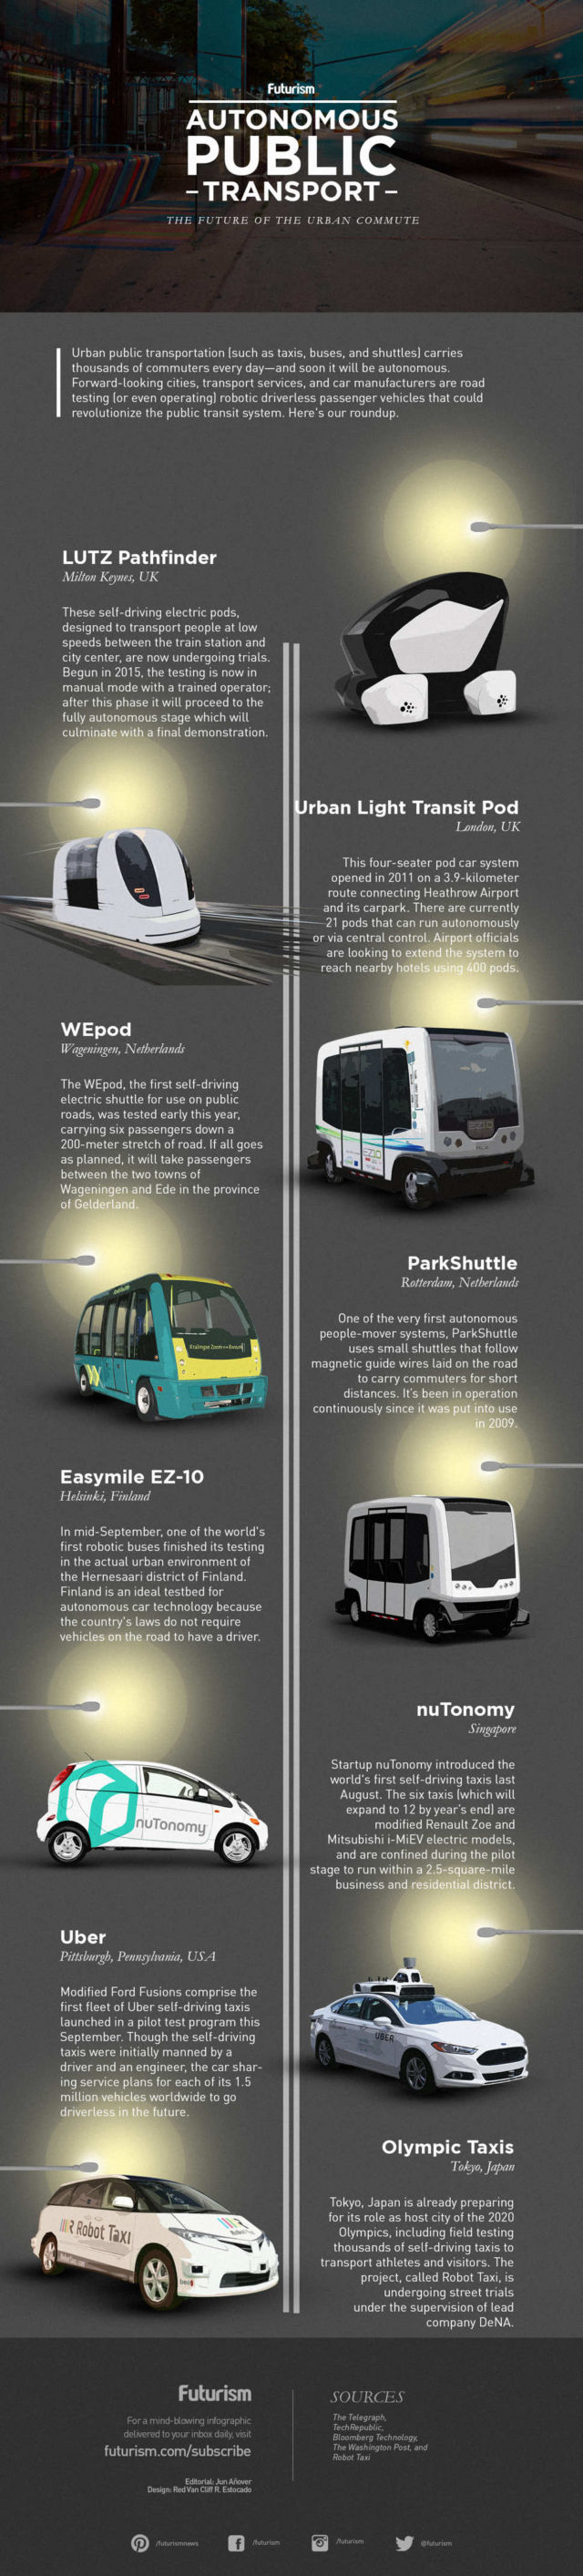 Autonomous Public Transport